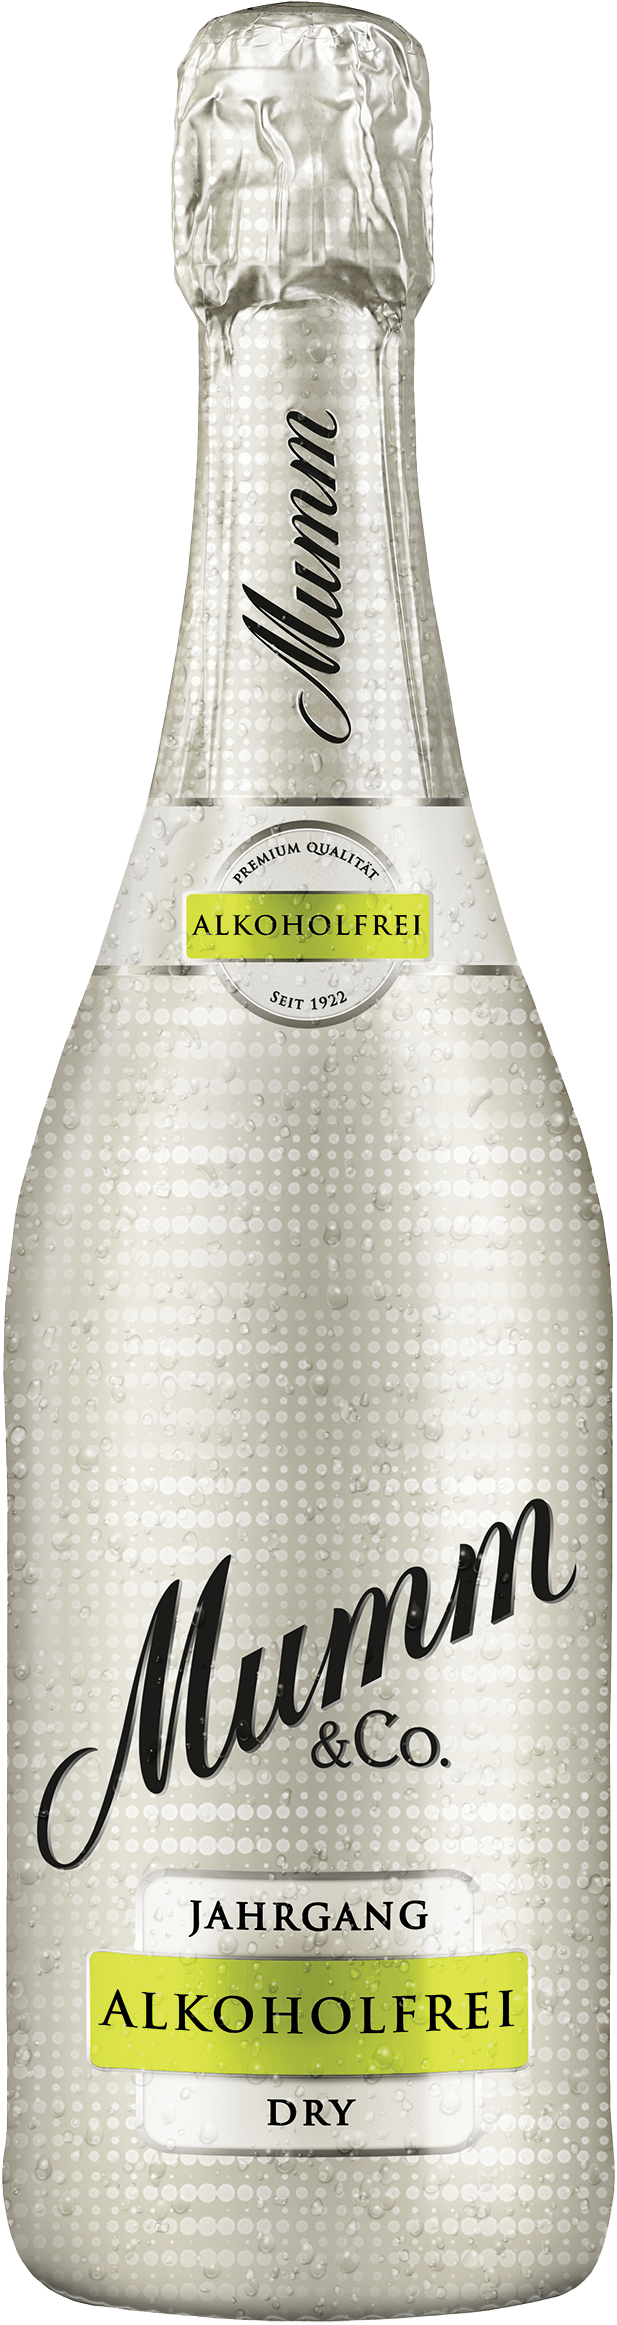 Mumm Dry Alkoholfrei von Rotkäppchen-Mumm Sektkellereien GmbH